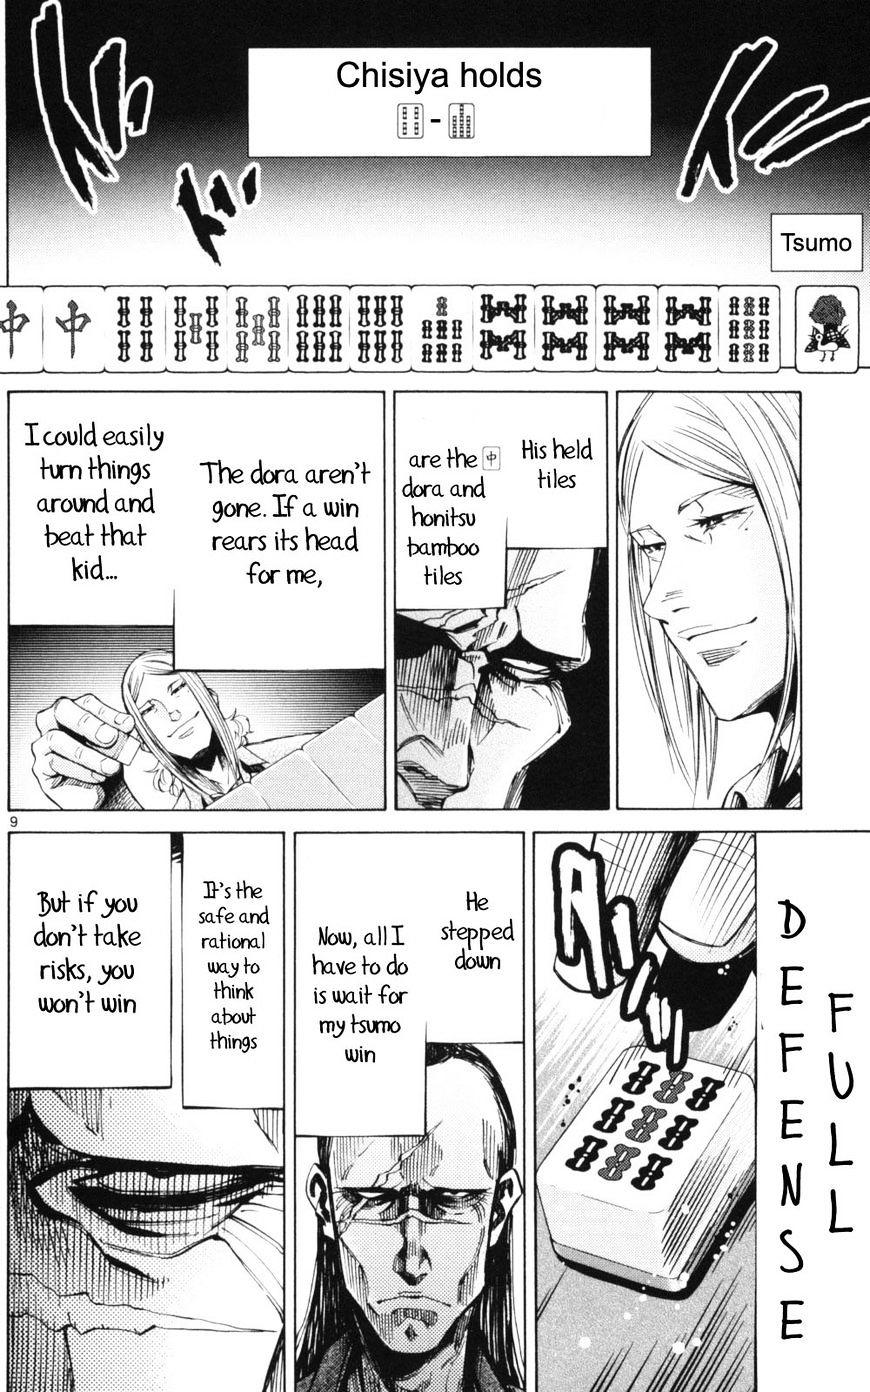 Imawa No Kuni No Alice Chapter 51.1 : Side Story 6 - King Of Diamonds (1) page 9 - Mangakakalot